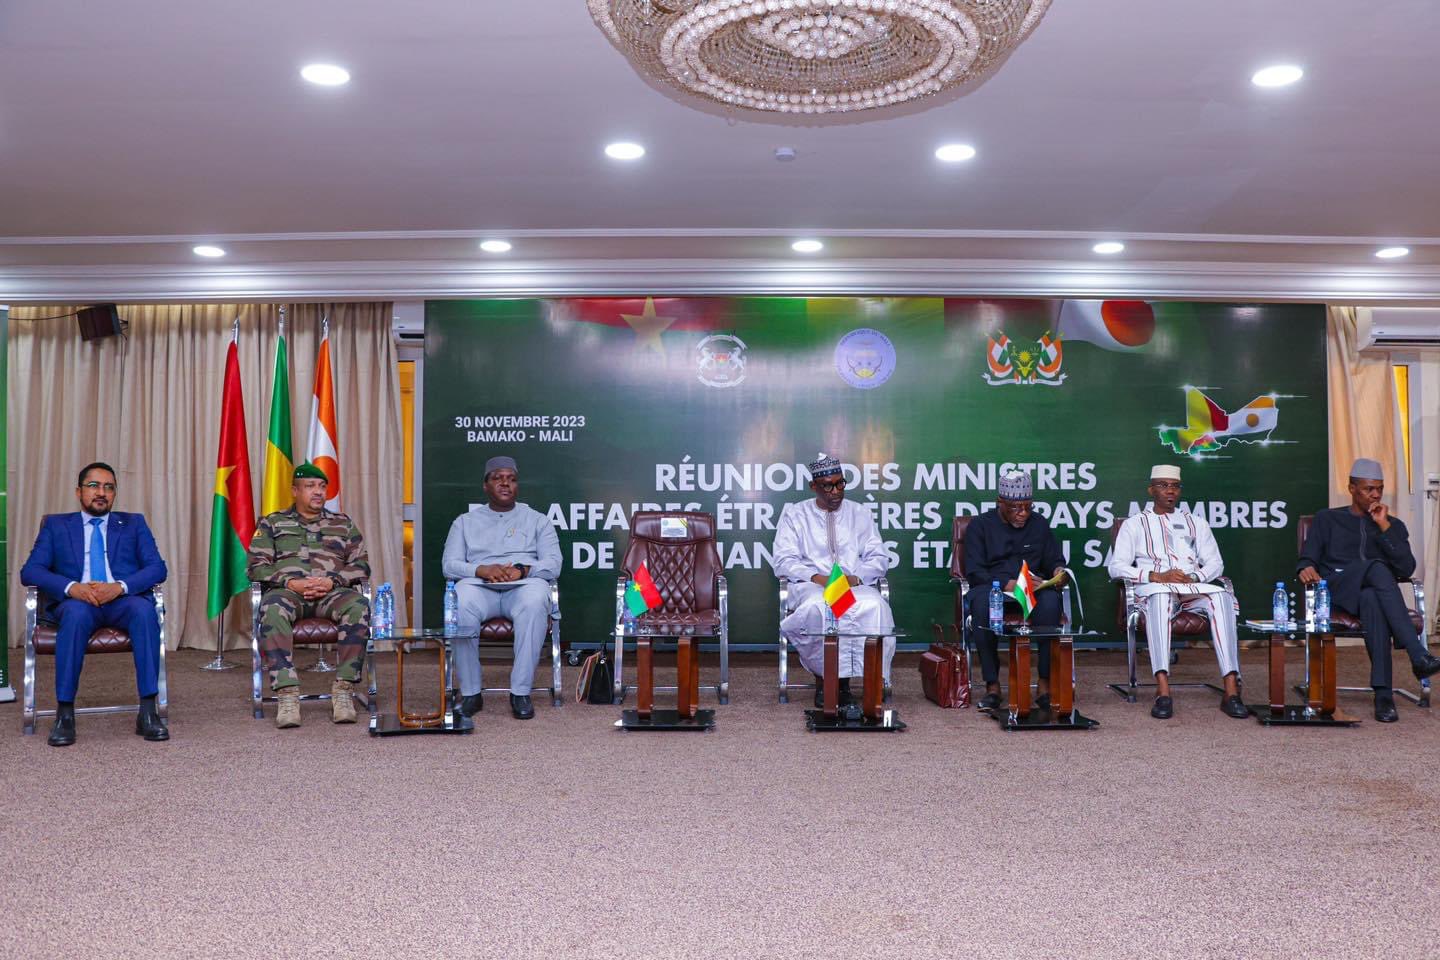 Les chefs de la diplomatie du Mali, du Niger et du Burkina Faso préconisent la création d’une union confédérale